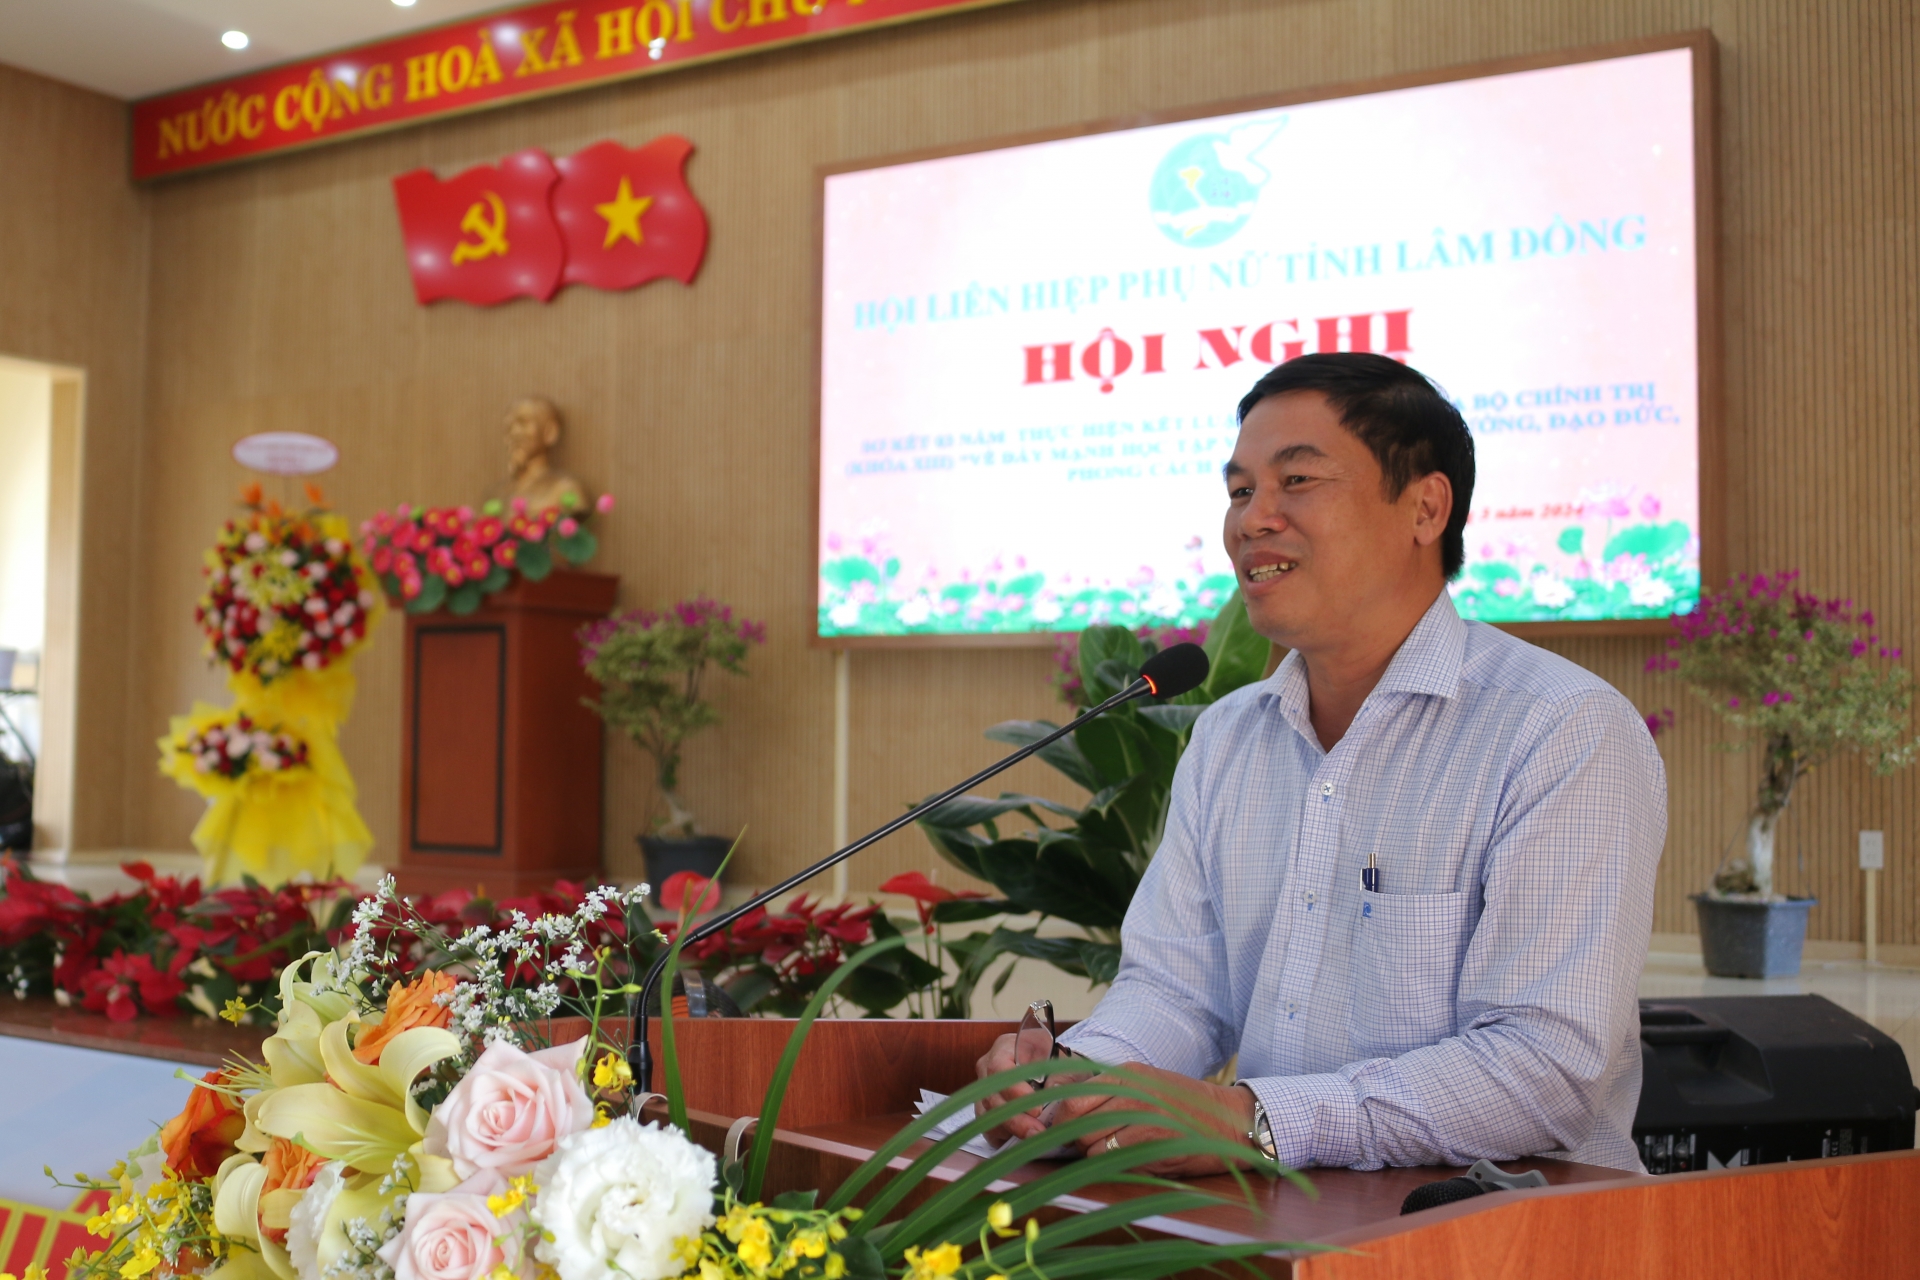 Ông Nghiêm Xuân Đức - Phó Bí thư Thường trực, Chủ tịch HĐND TP Bảo Lộc phát biểu chào mừng